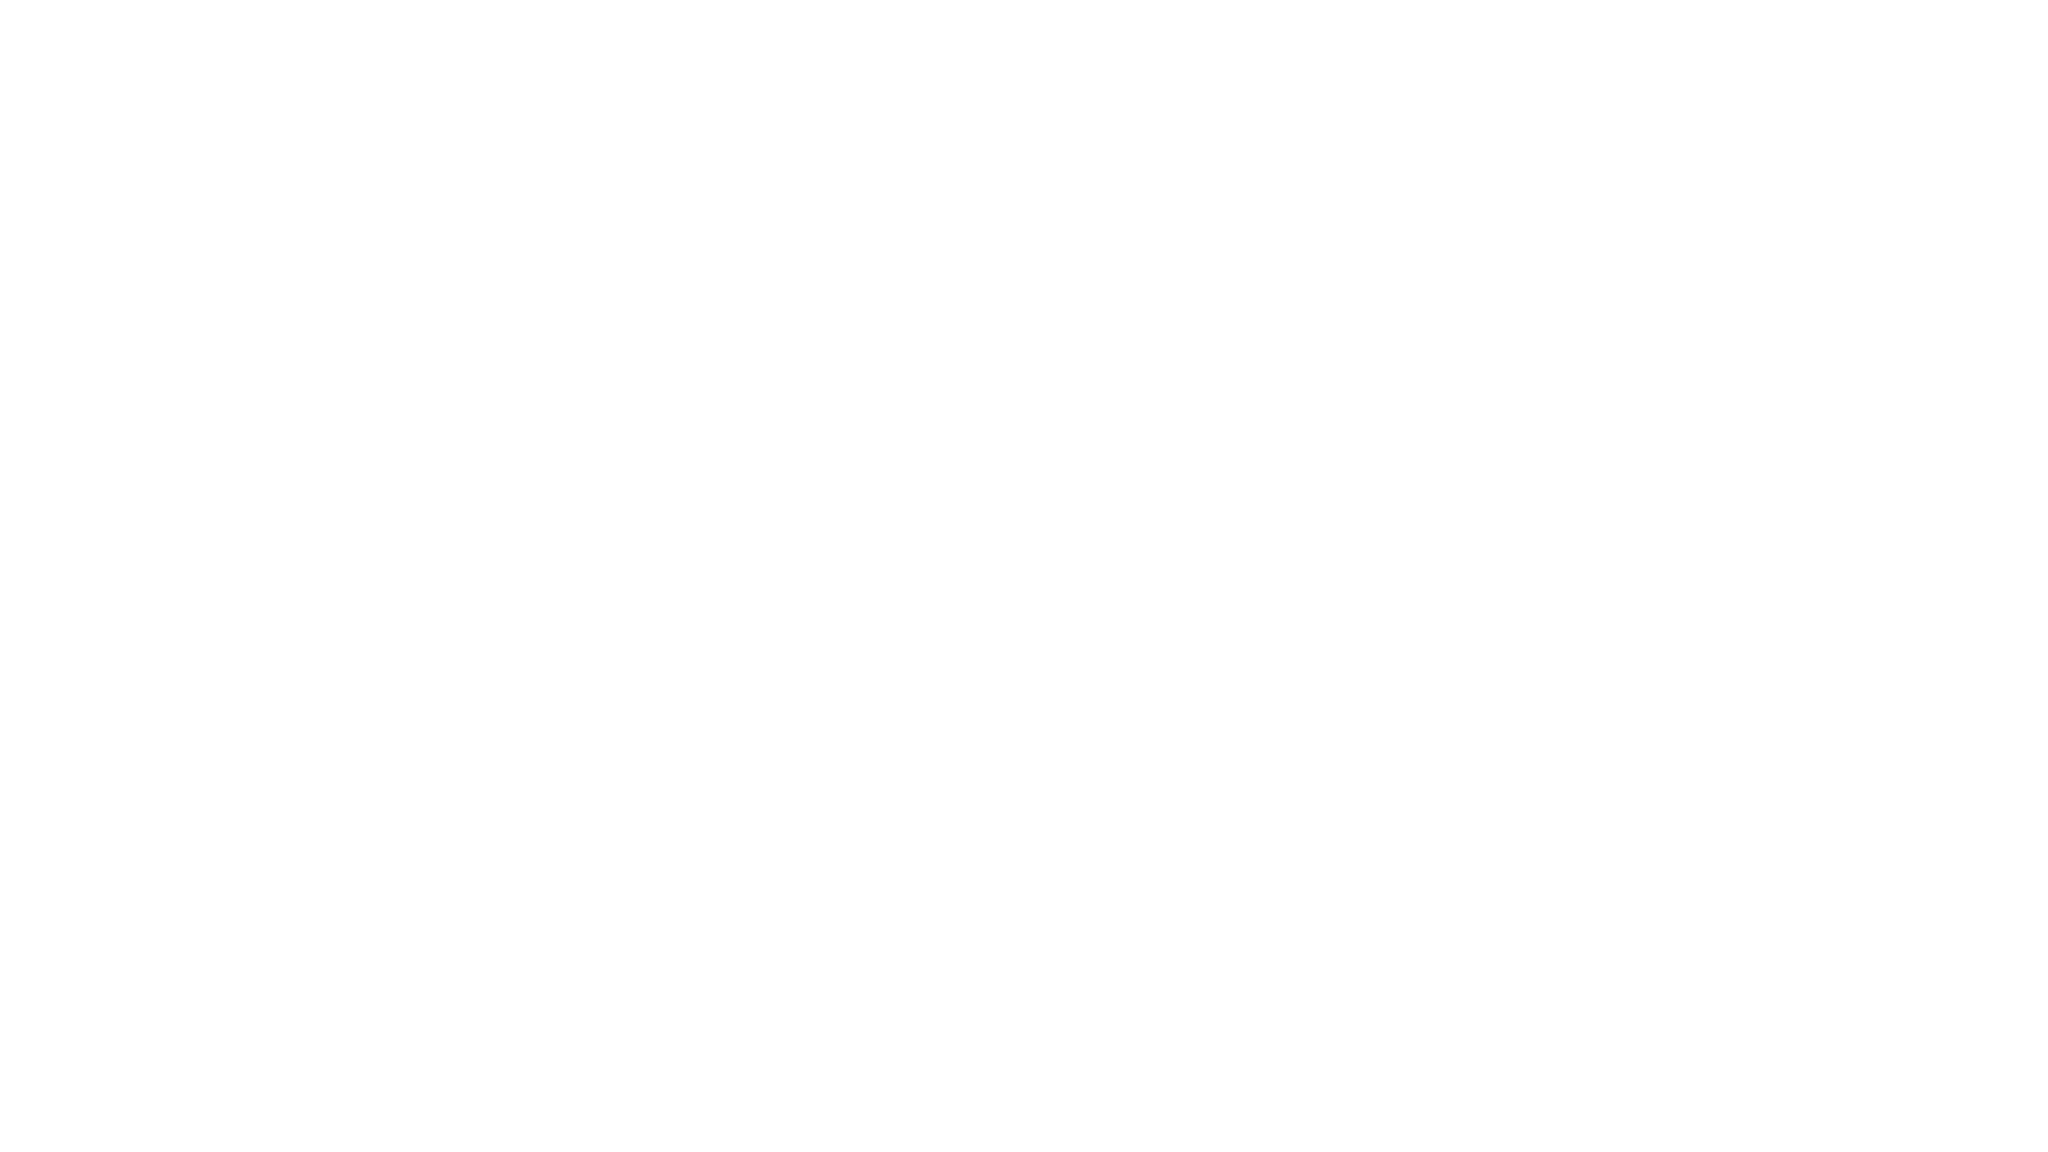 Campi estivi nelle vicinanze (cosa cercare) - Finest Summer Camps americani